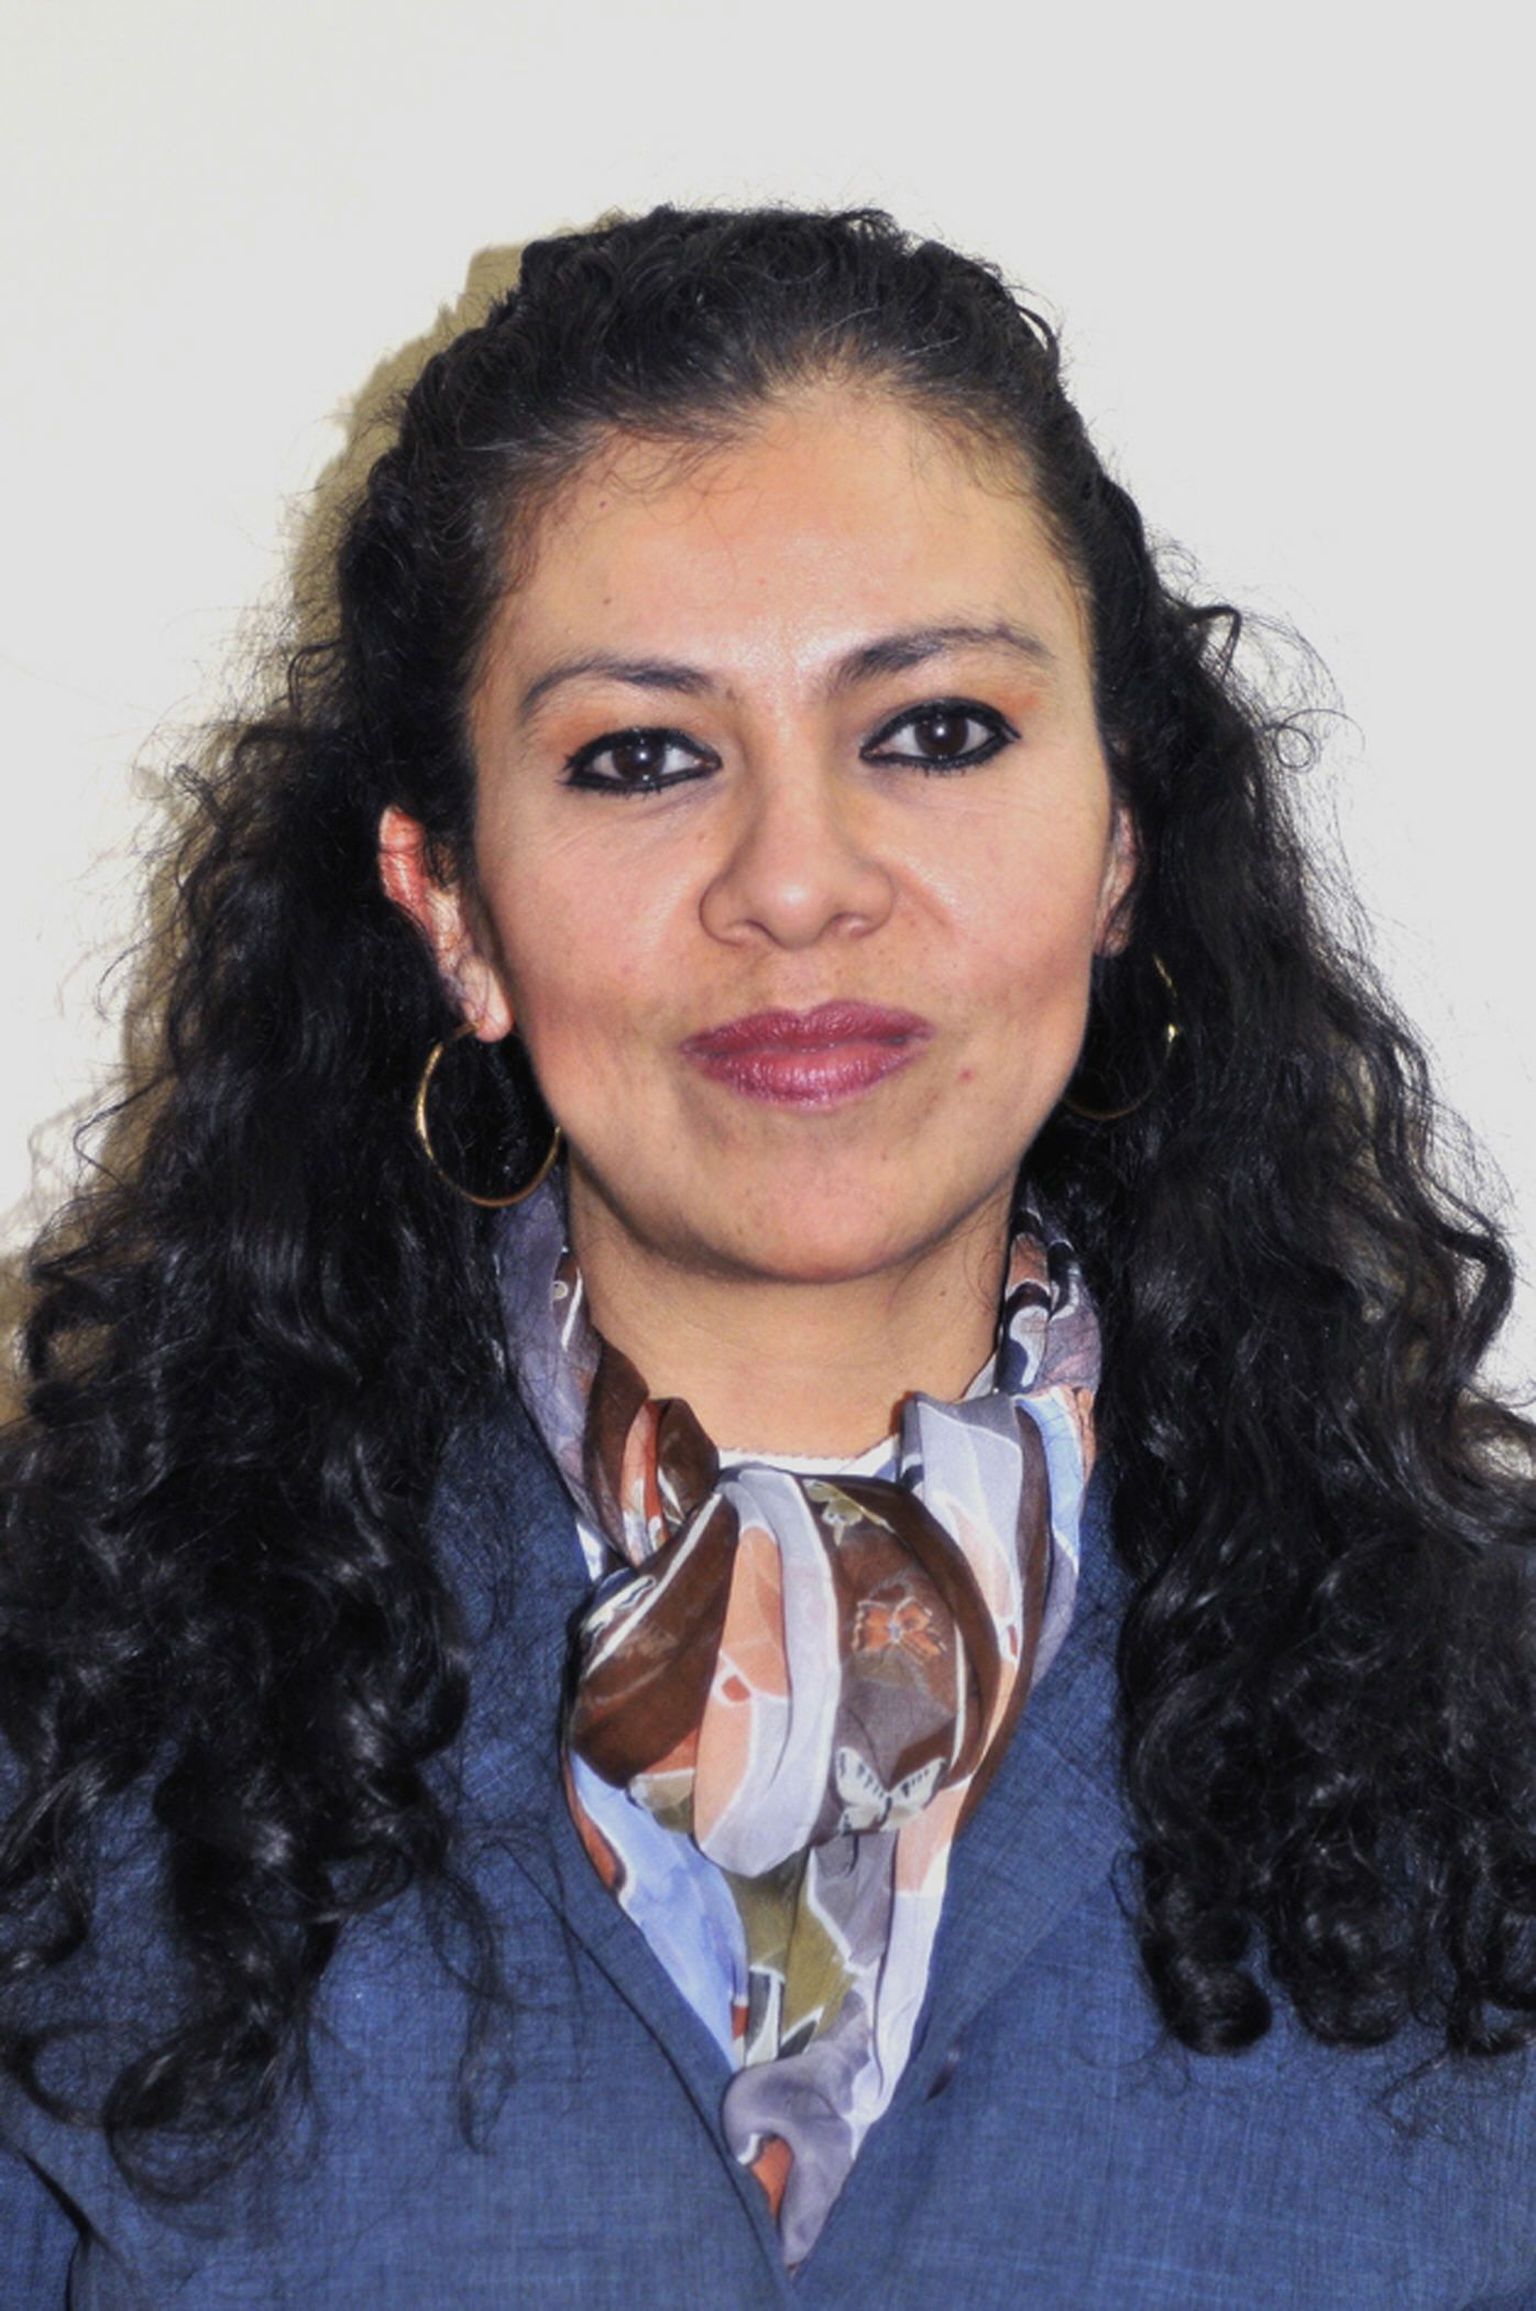 Üks tapetud ajakirjanikest, Ana Marcela Yarce.